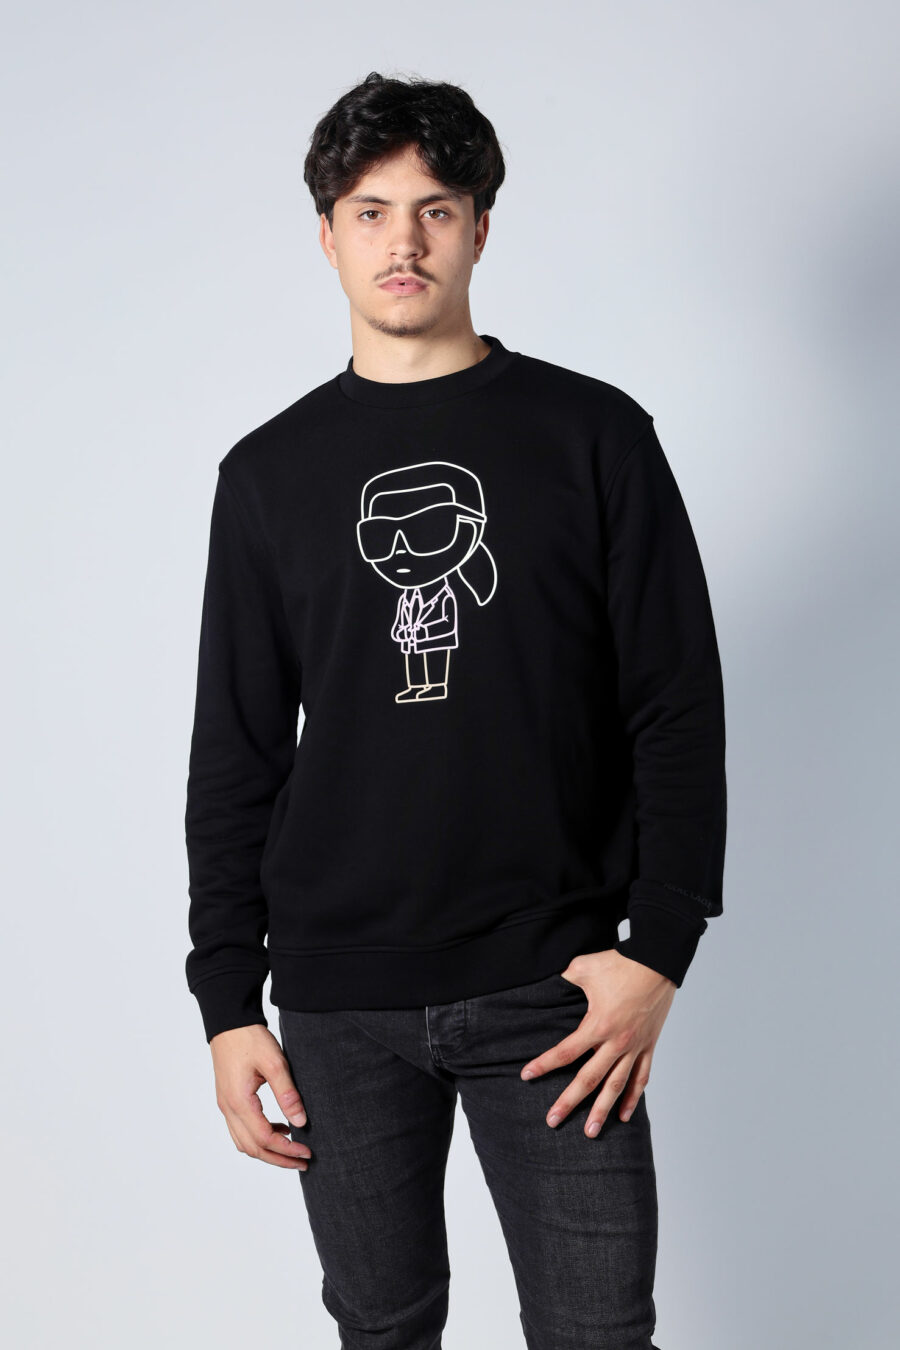 Schwarzes Sweatshirt mit mehrfarbigem "karl silhouette" maxilogue - Untitled Catalog 05744